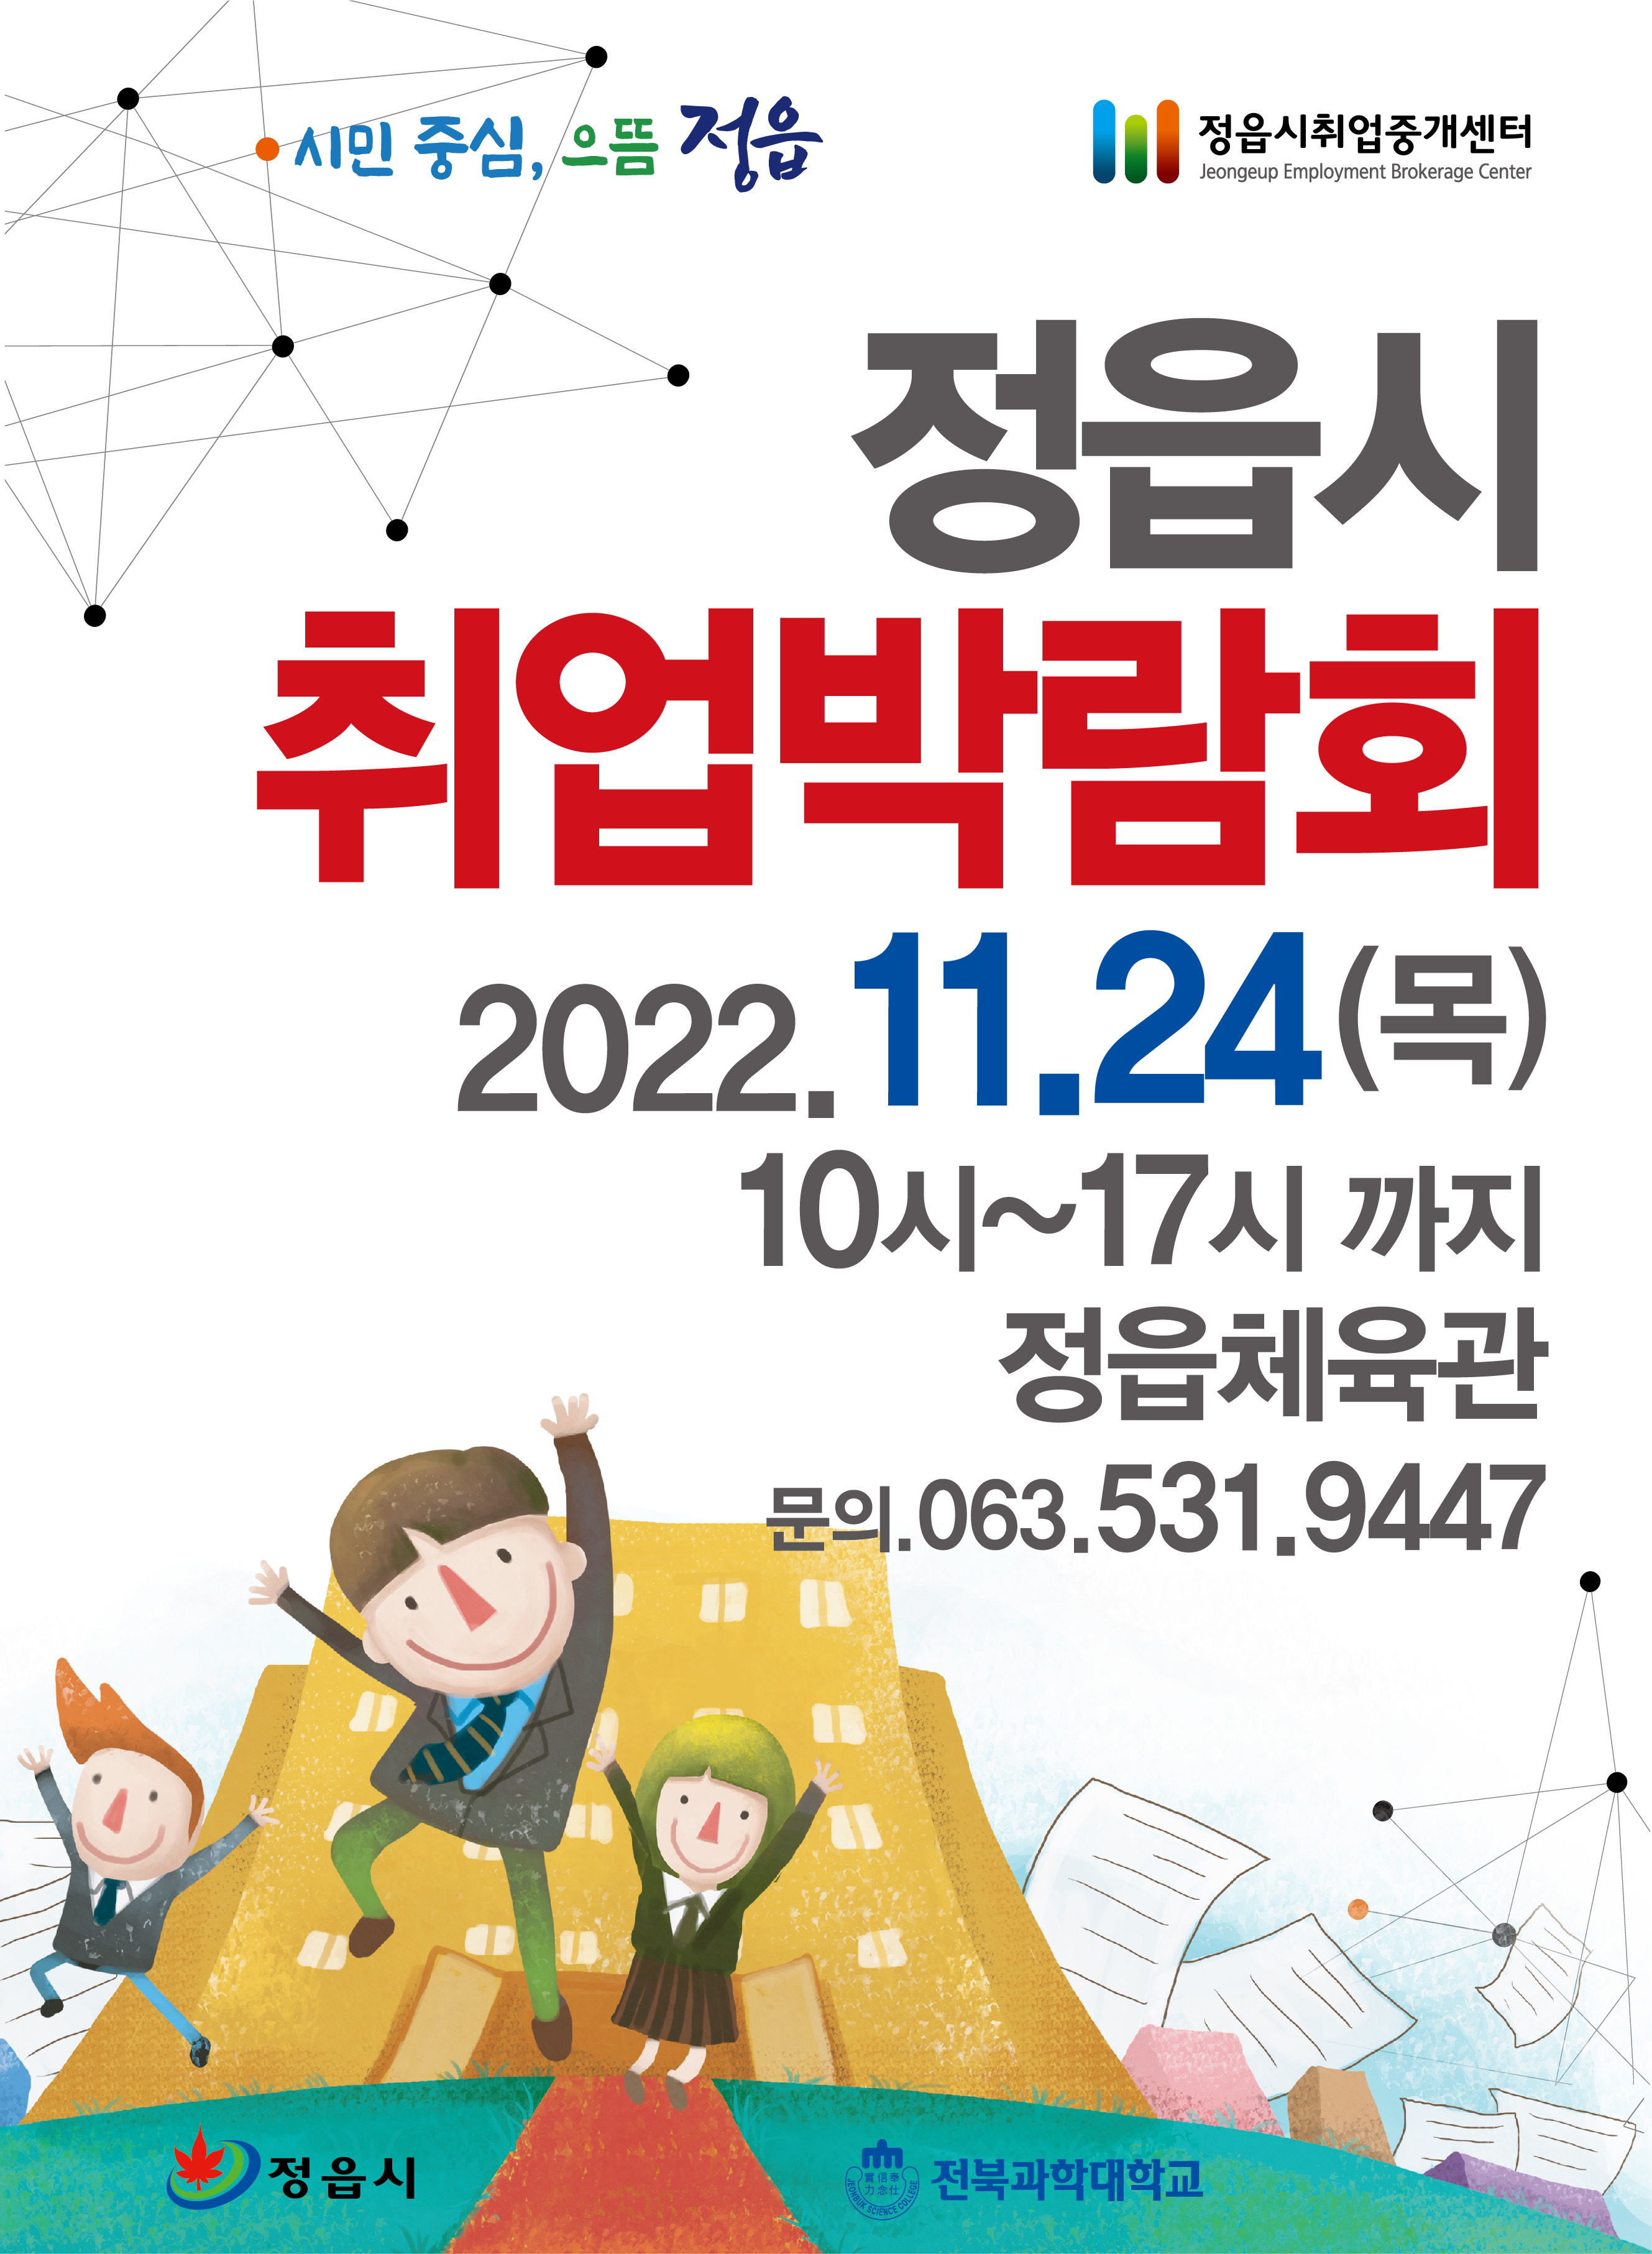 2022년 정읍시 취업박람회 개최 홍보